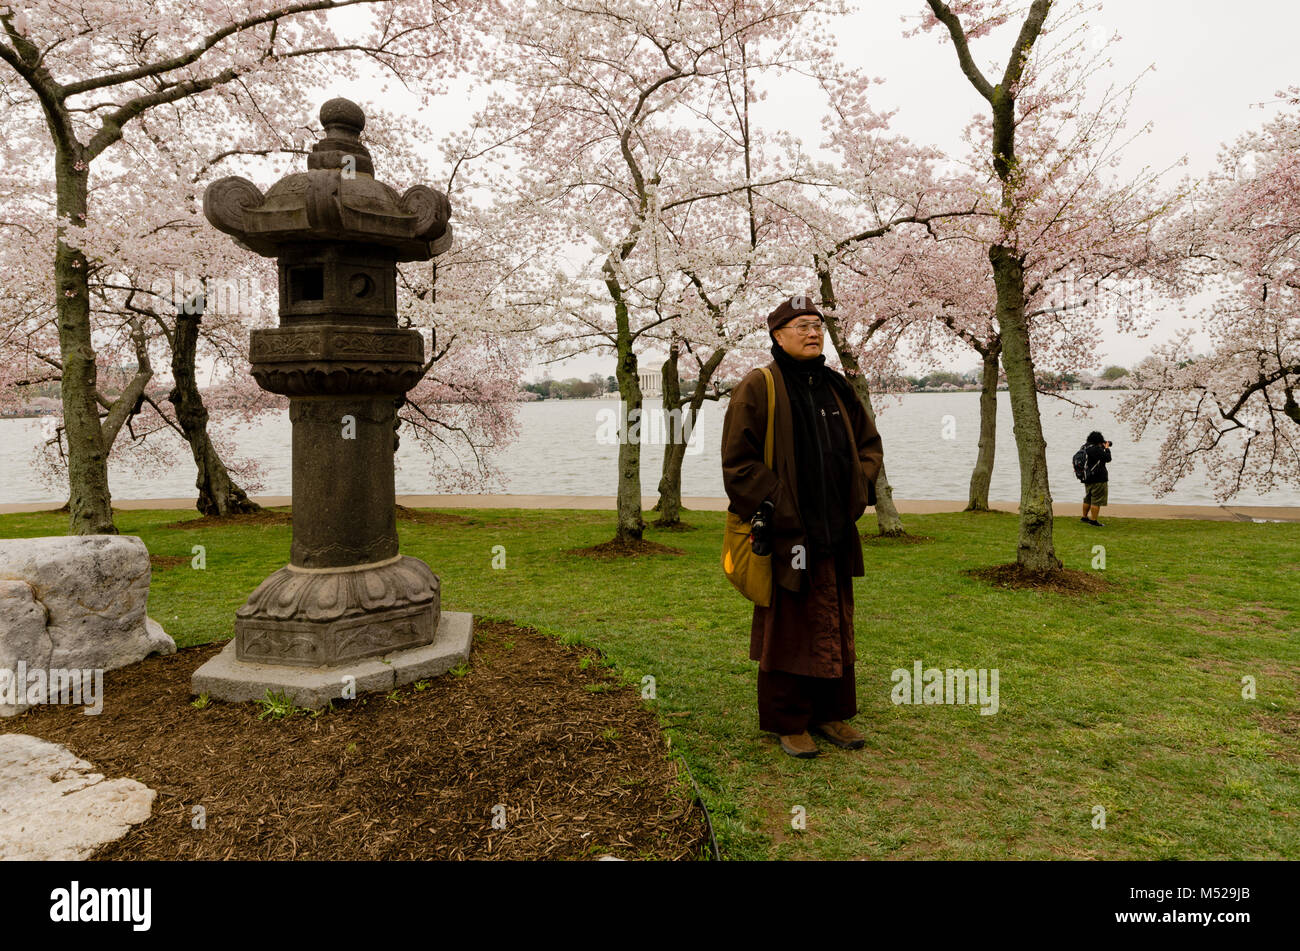 Washington, DC: monaco tibetano in posa con lanterna giapponese in un boschetto di alberi di ciliegio che al picco di primavera fioriscono accanto al bacino di marea. Foto Stock